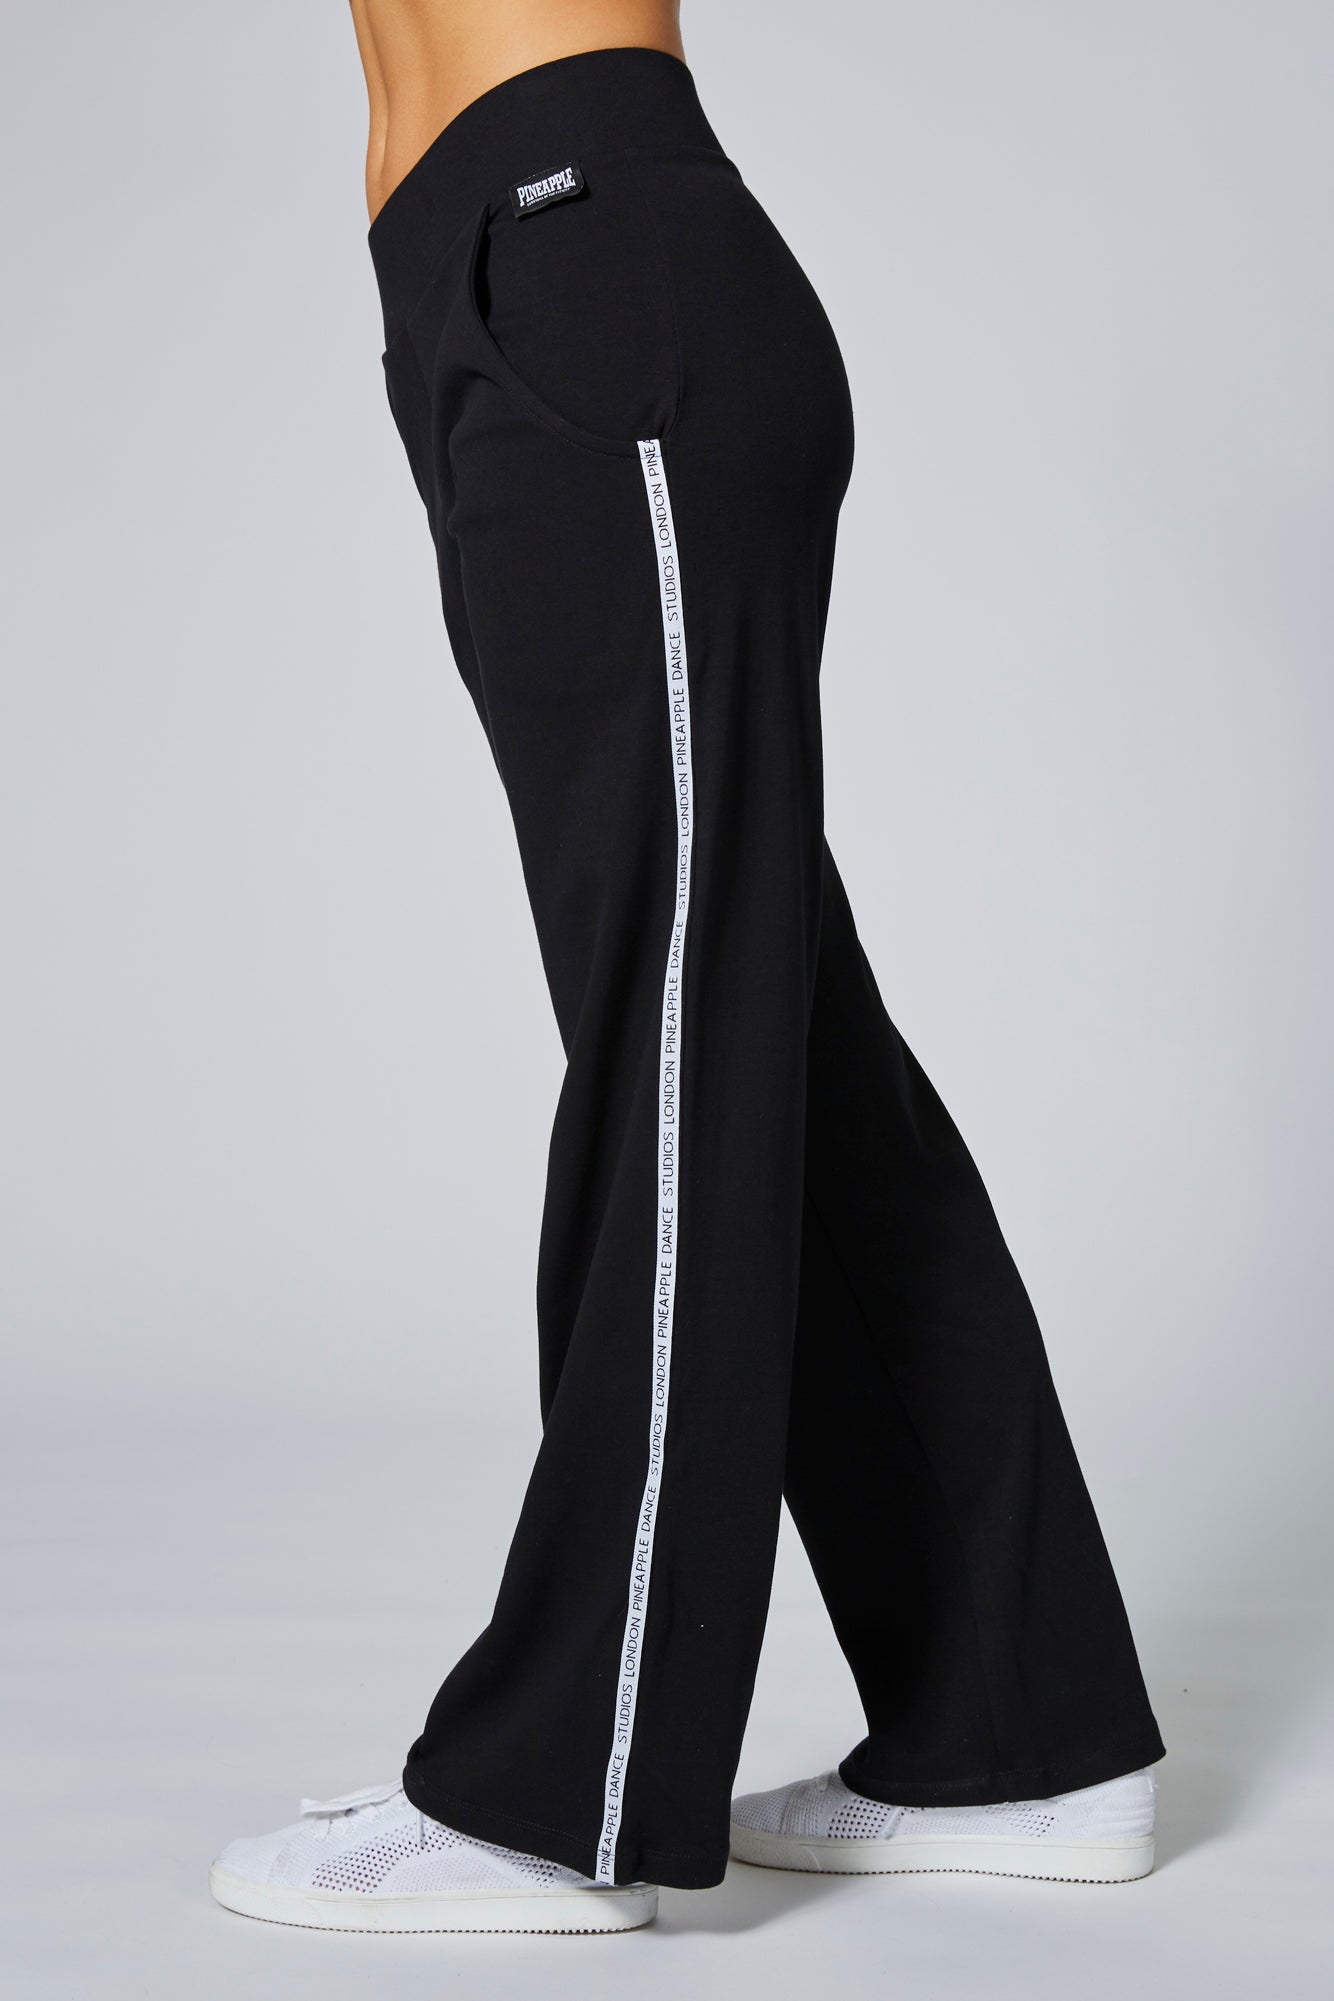 Tall Sweatpants for Women: Fleece Open Bottom Pants Black